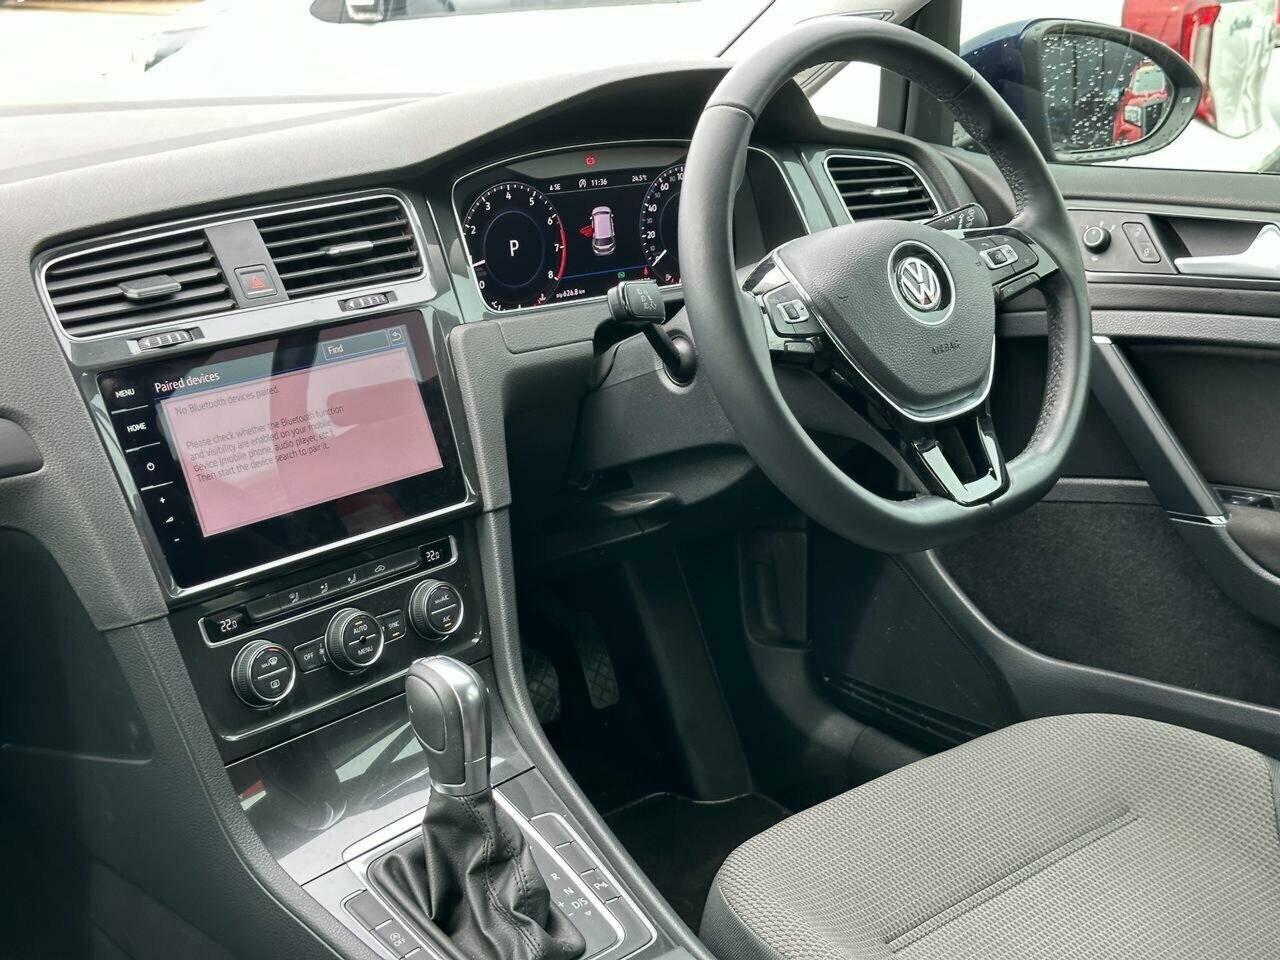 2017 Volkswagen Golf 7.5 MY18 110TSI DSG Comfortline Hatch Image 12